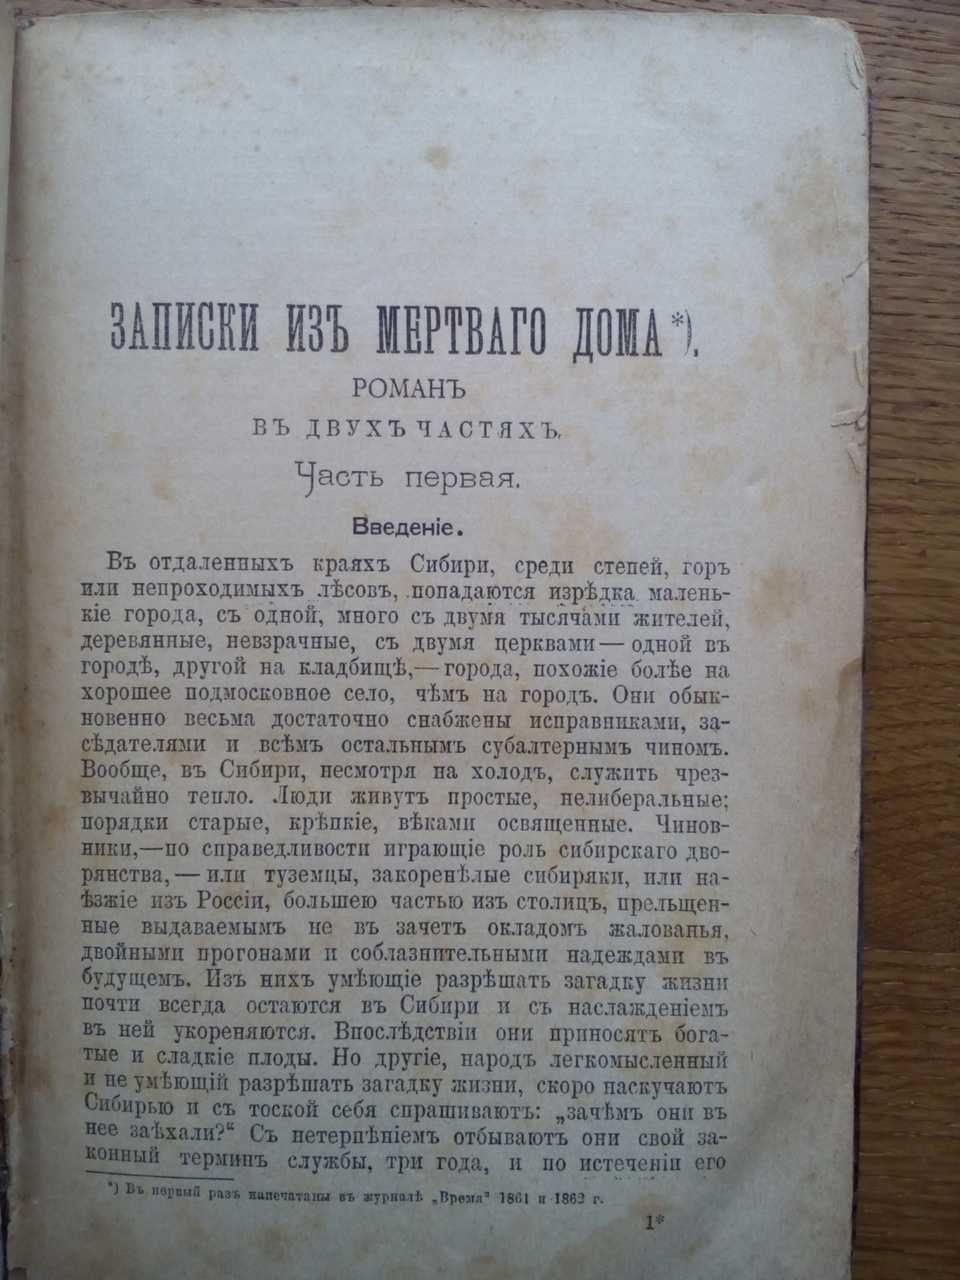 Достоевский 1894г.